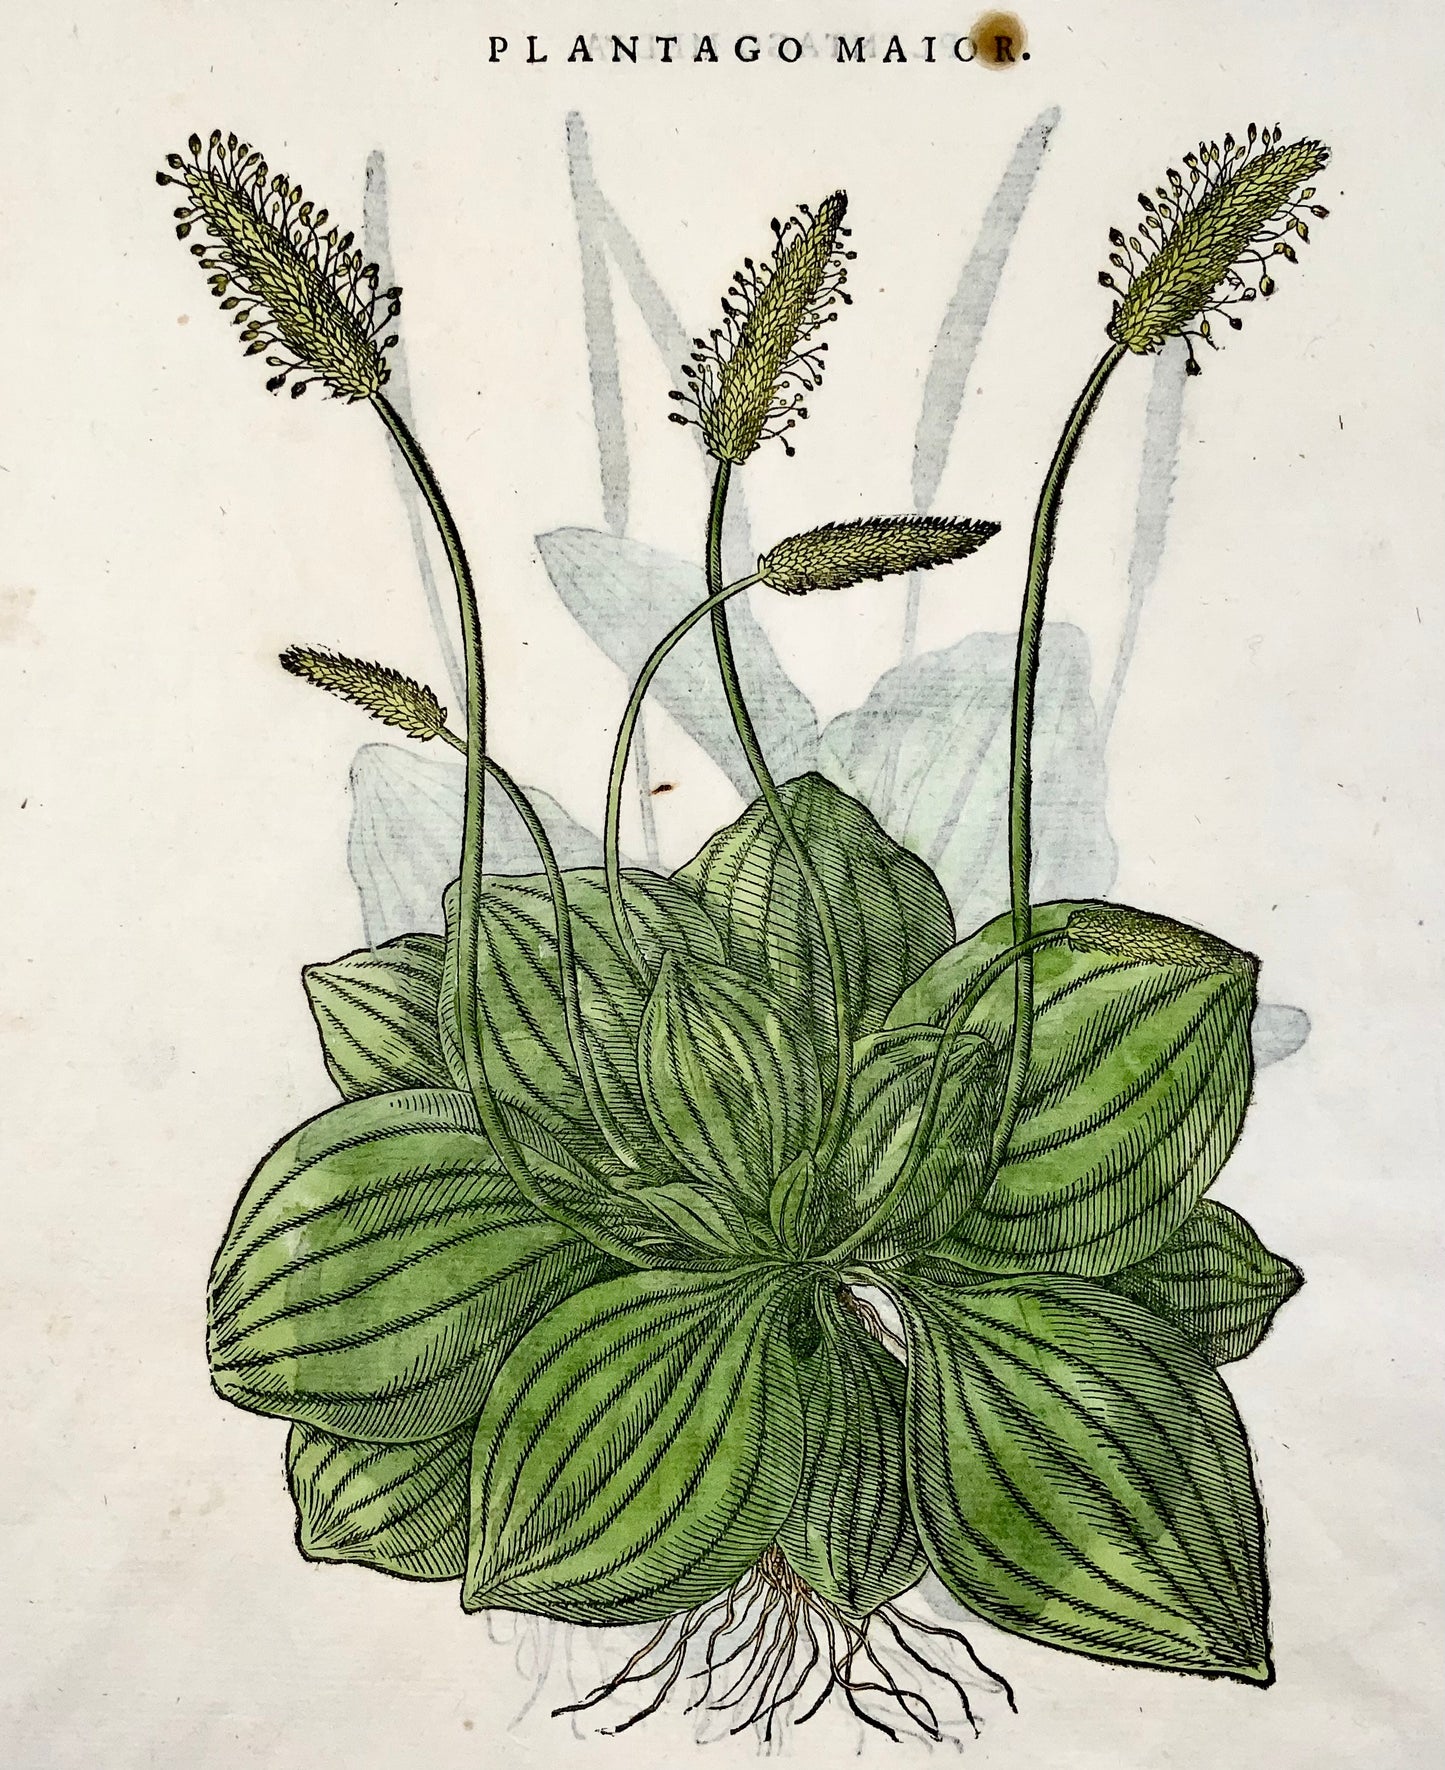 1562 Piantaggine [Plantago] - Matthioli Botanical - Folio 2 xilografie - Colore a mano